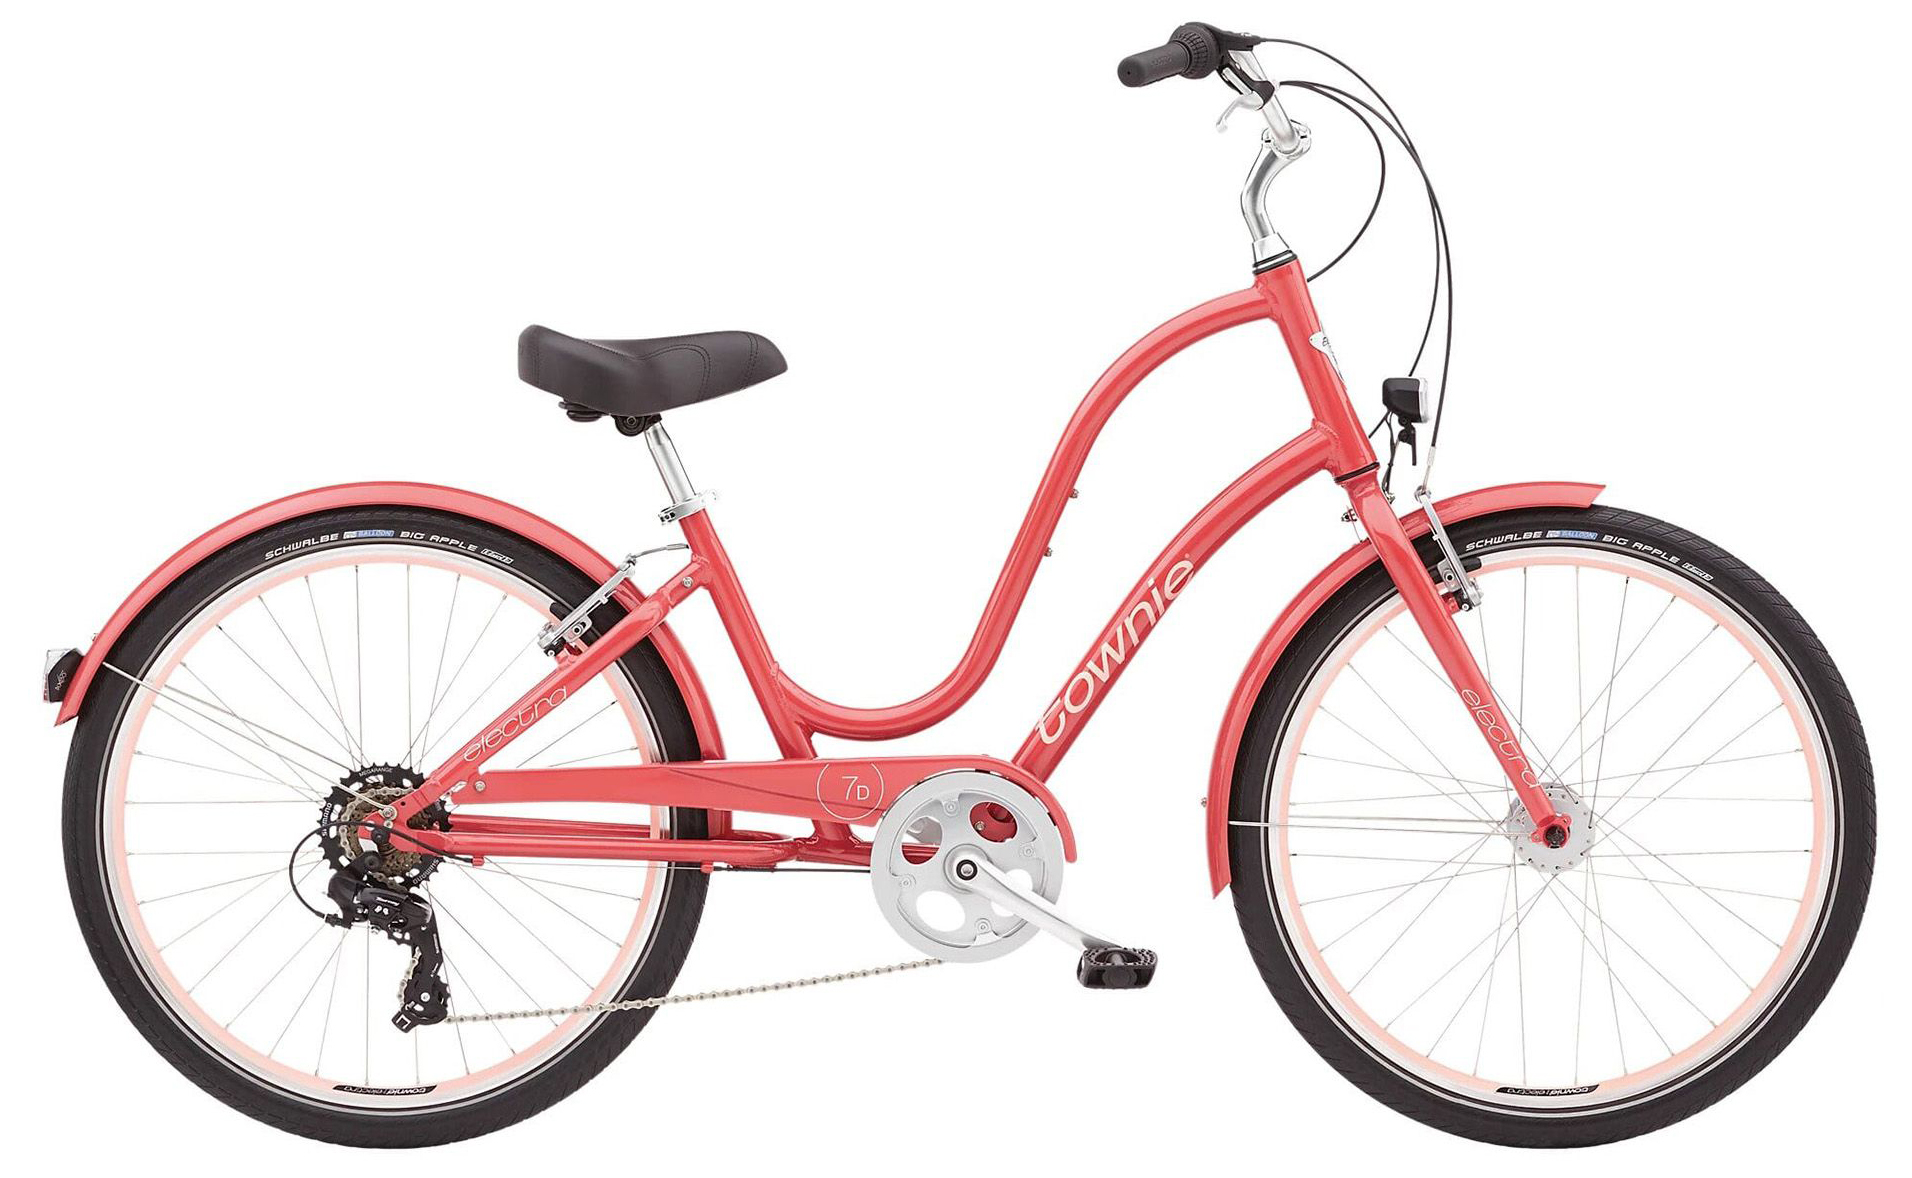  Отзывы о Детском велосипеде Electra Townie 7D EQ 24 (2021) 2021